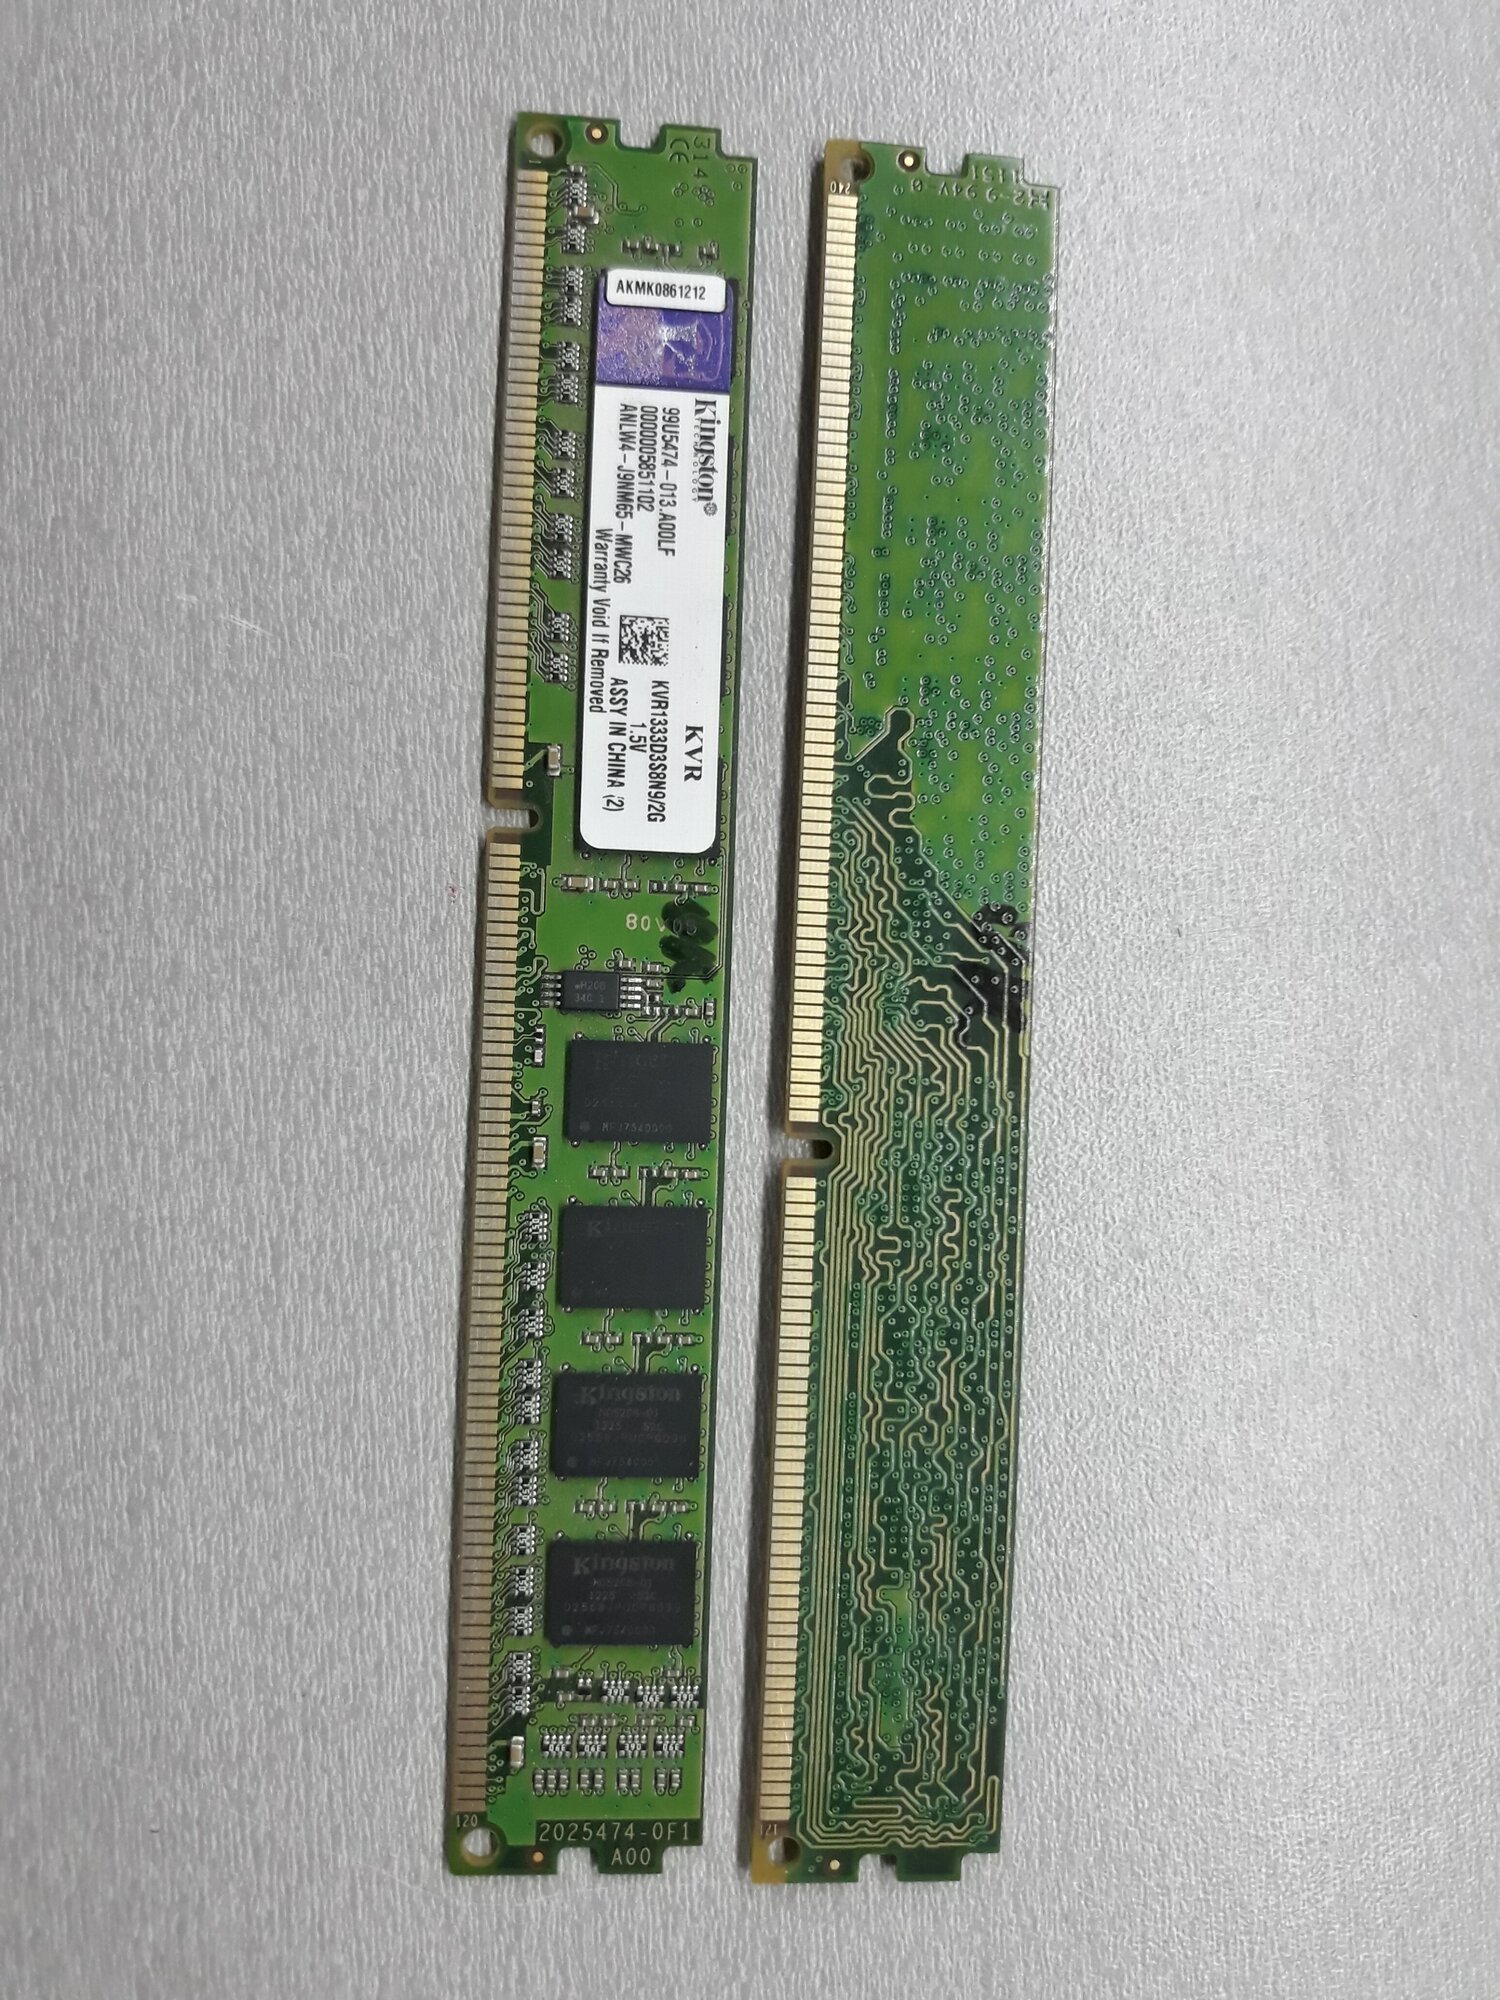 Комплект ОЗУ DDR3 4Gb (2+2Gb) 1333Mhz Kingston 1Rx8 PC3-10600 KVR1333D3S8N9 2G